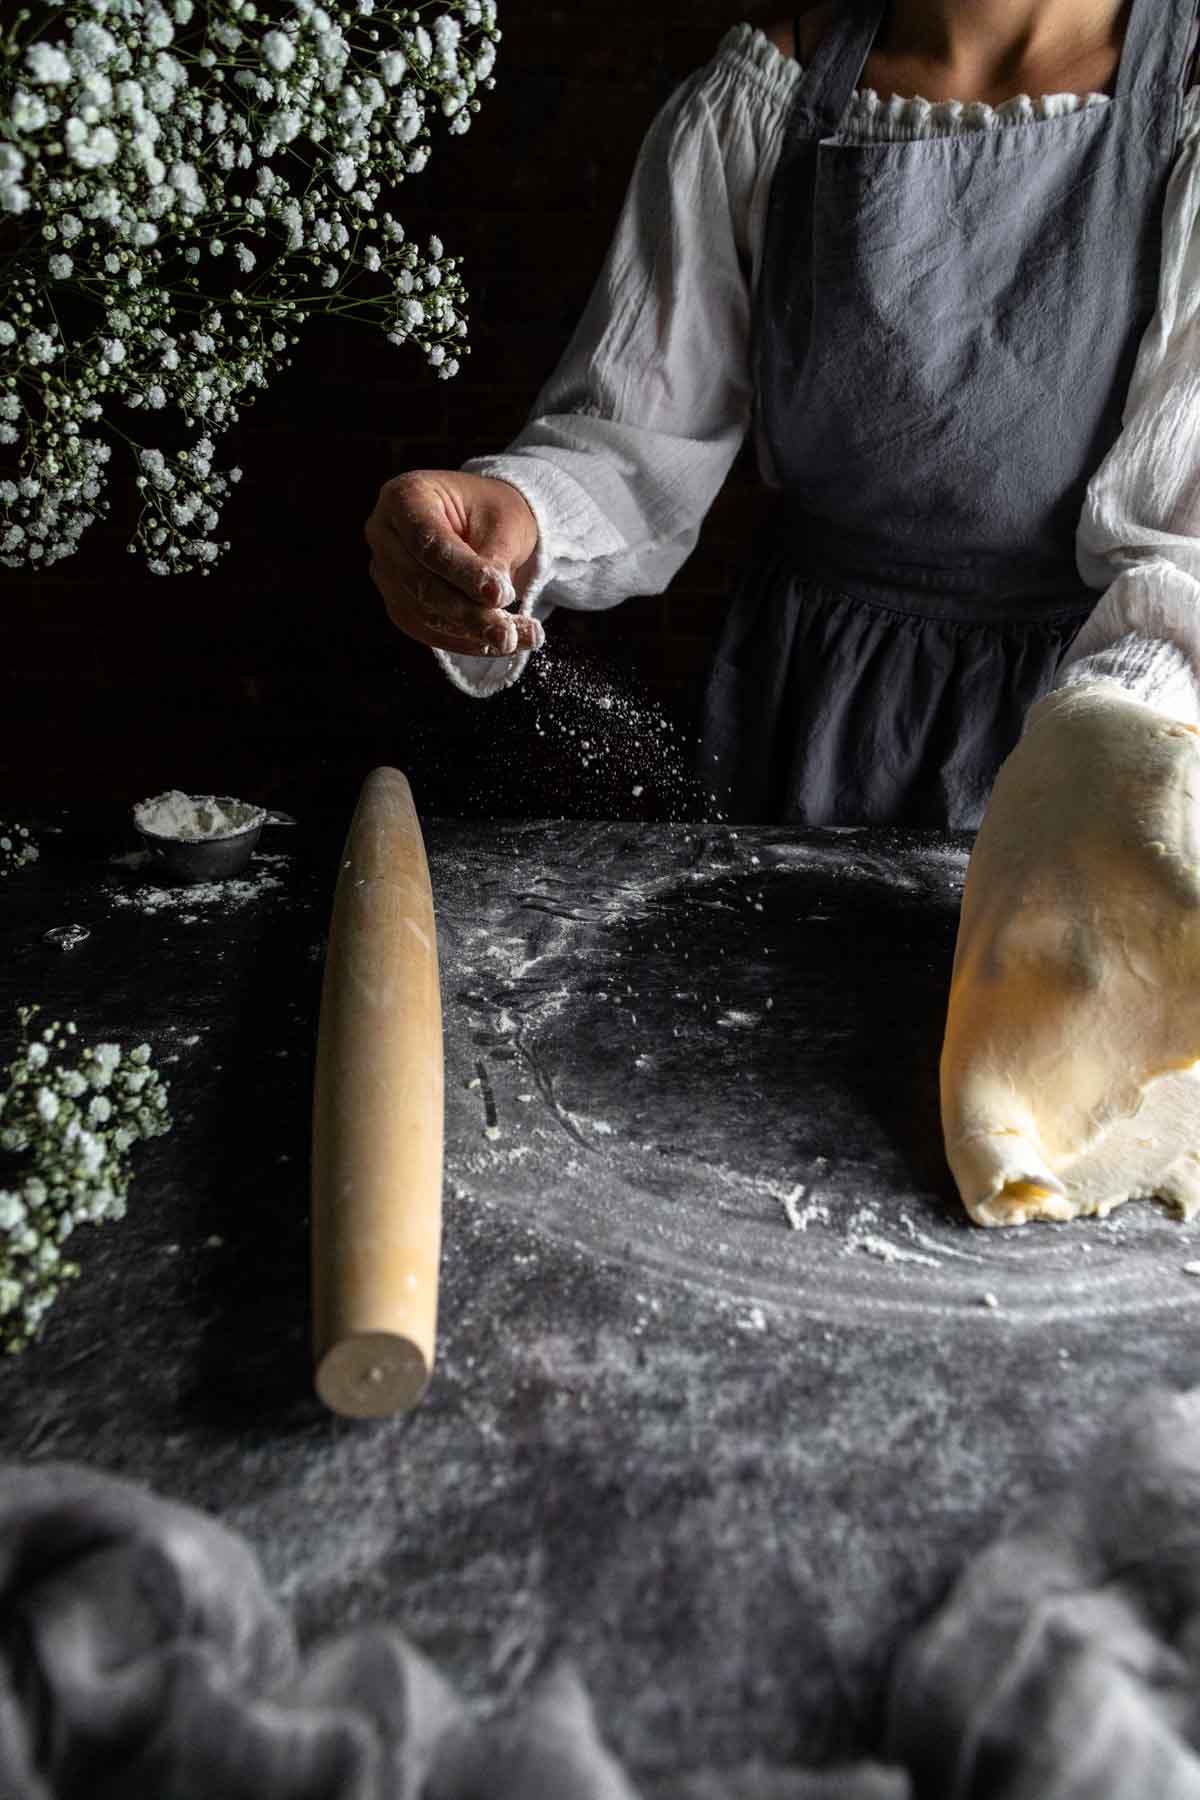 A woman sprinkling flour onto pie dough